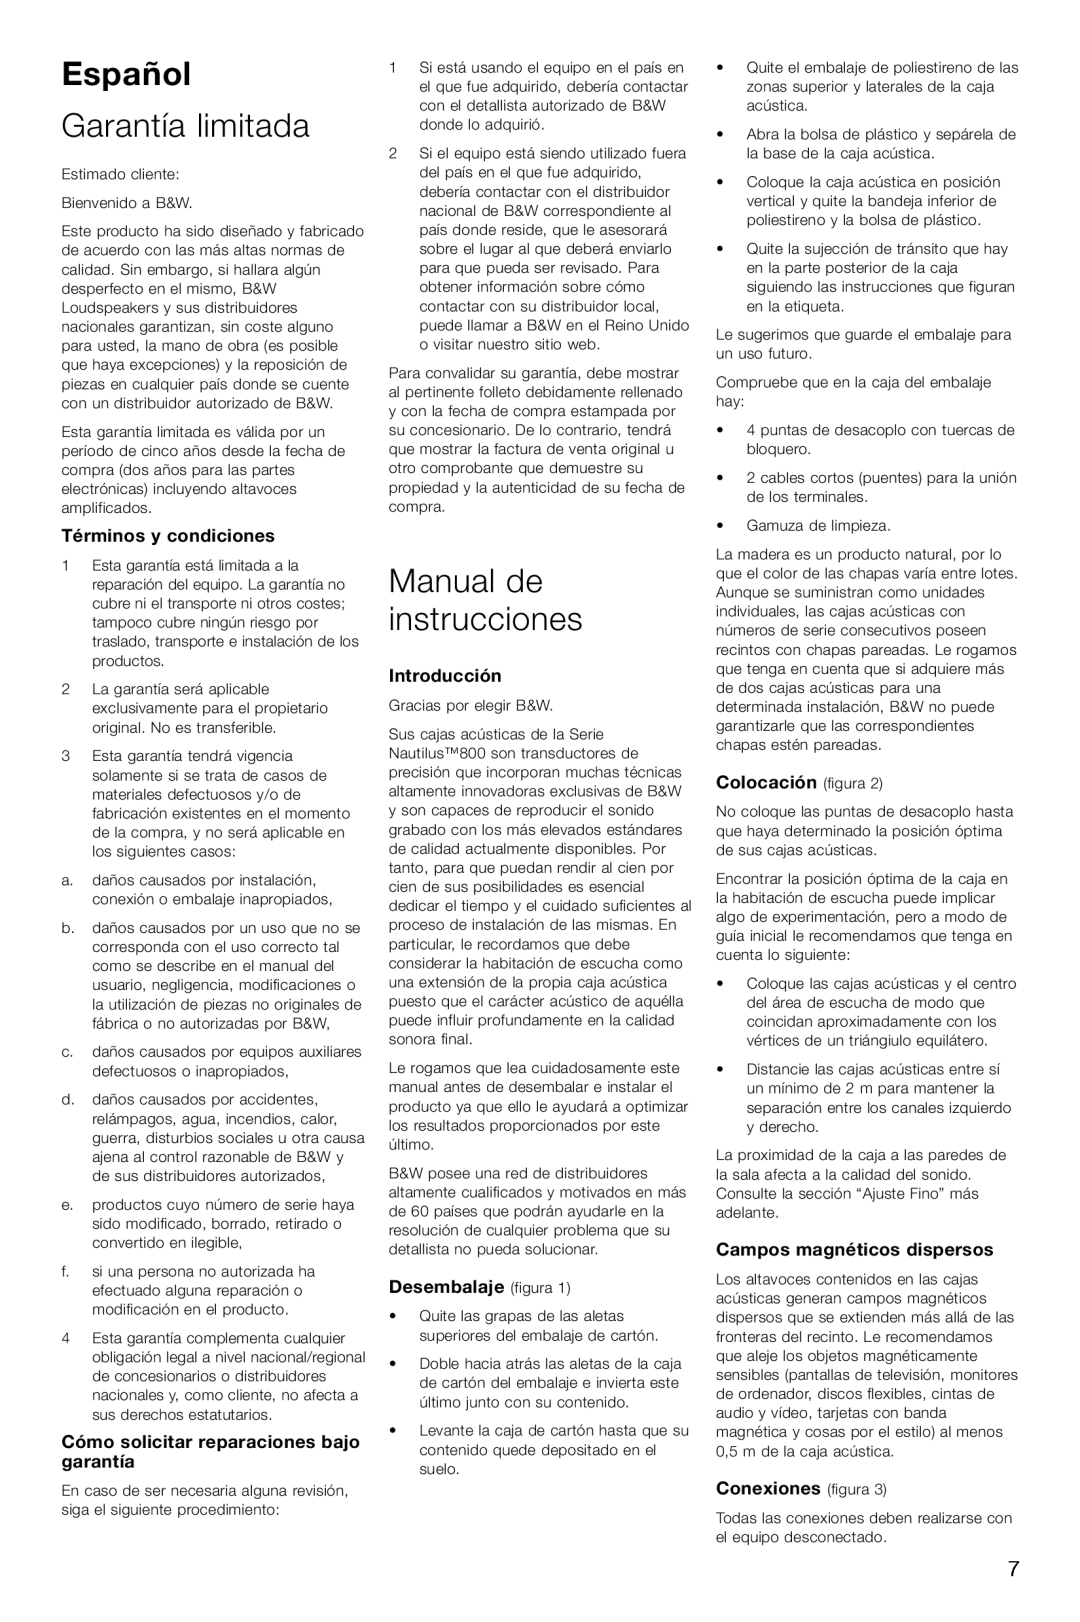 Bowers & Wilkins 804, 803 Español, Garantía limitada, Manual de instrucciones, Términos y condiciones, Introducción 